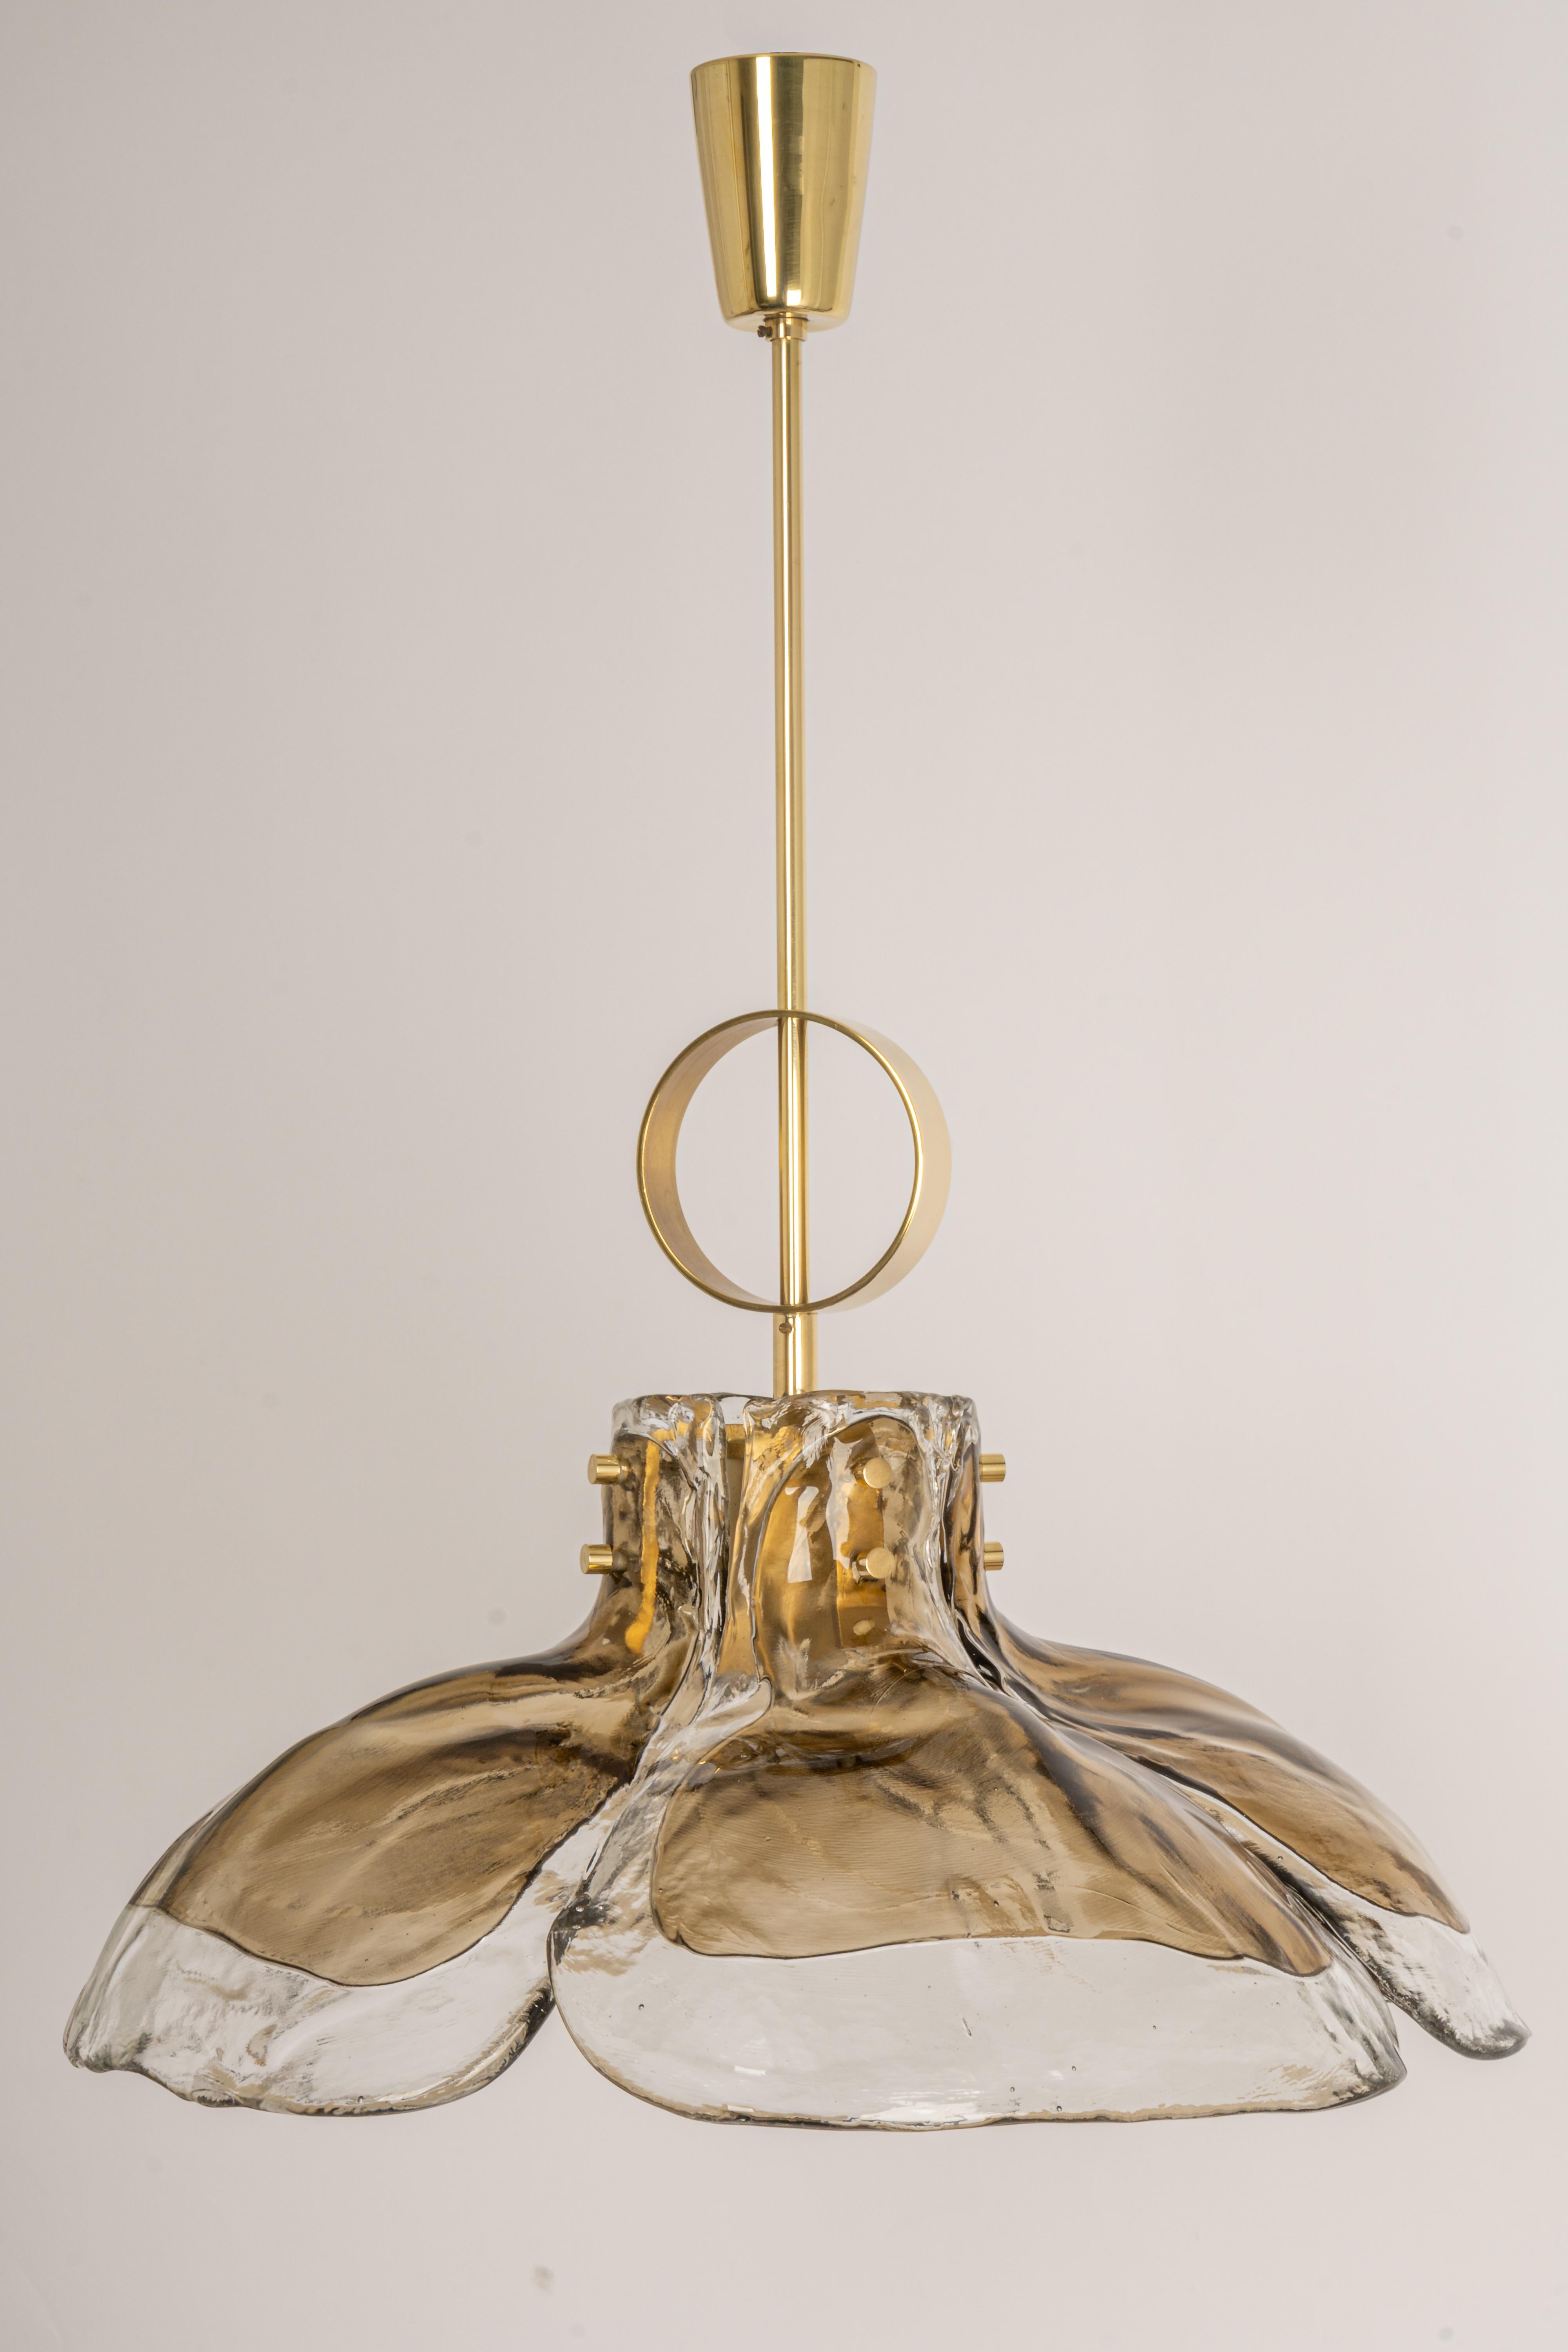 Magnifique lustre en verre fumé de Murano, conçu par Kalmar, Autriche, fabriqué dans les années 1960.
Le lustre est composé de 4 éléments épais en verre de Murano fixés à une armature métallique.

De haute qualité et en très bon état. Nettoyé, bien